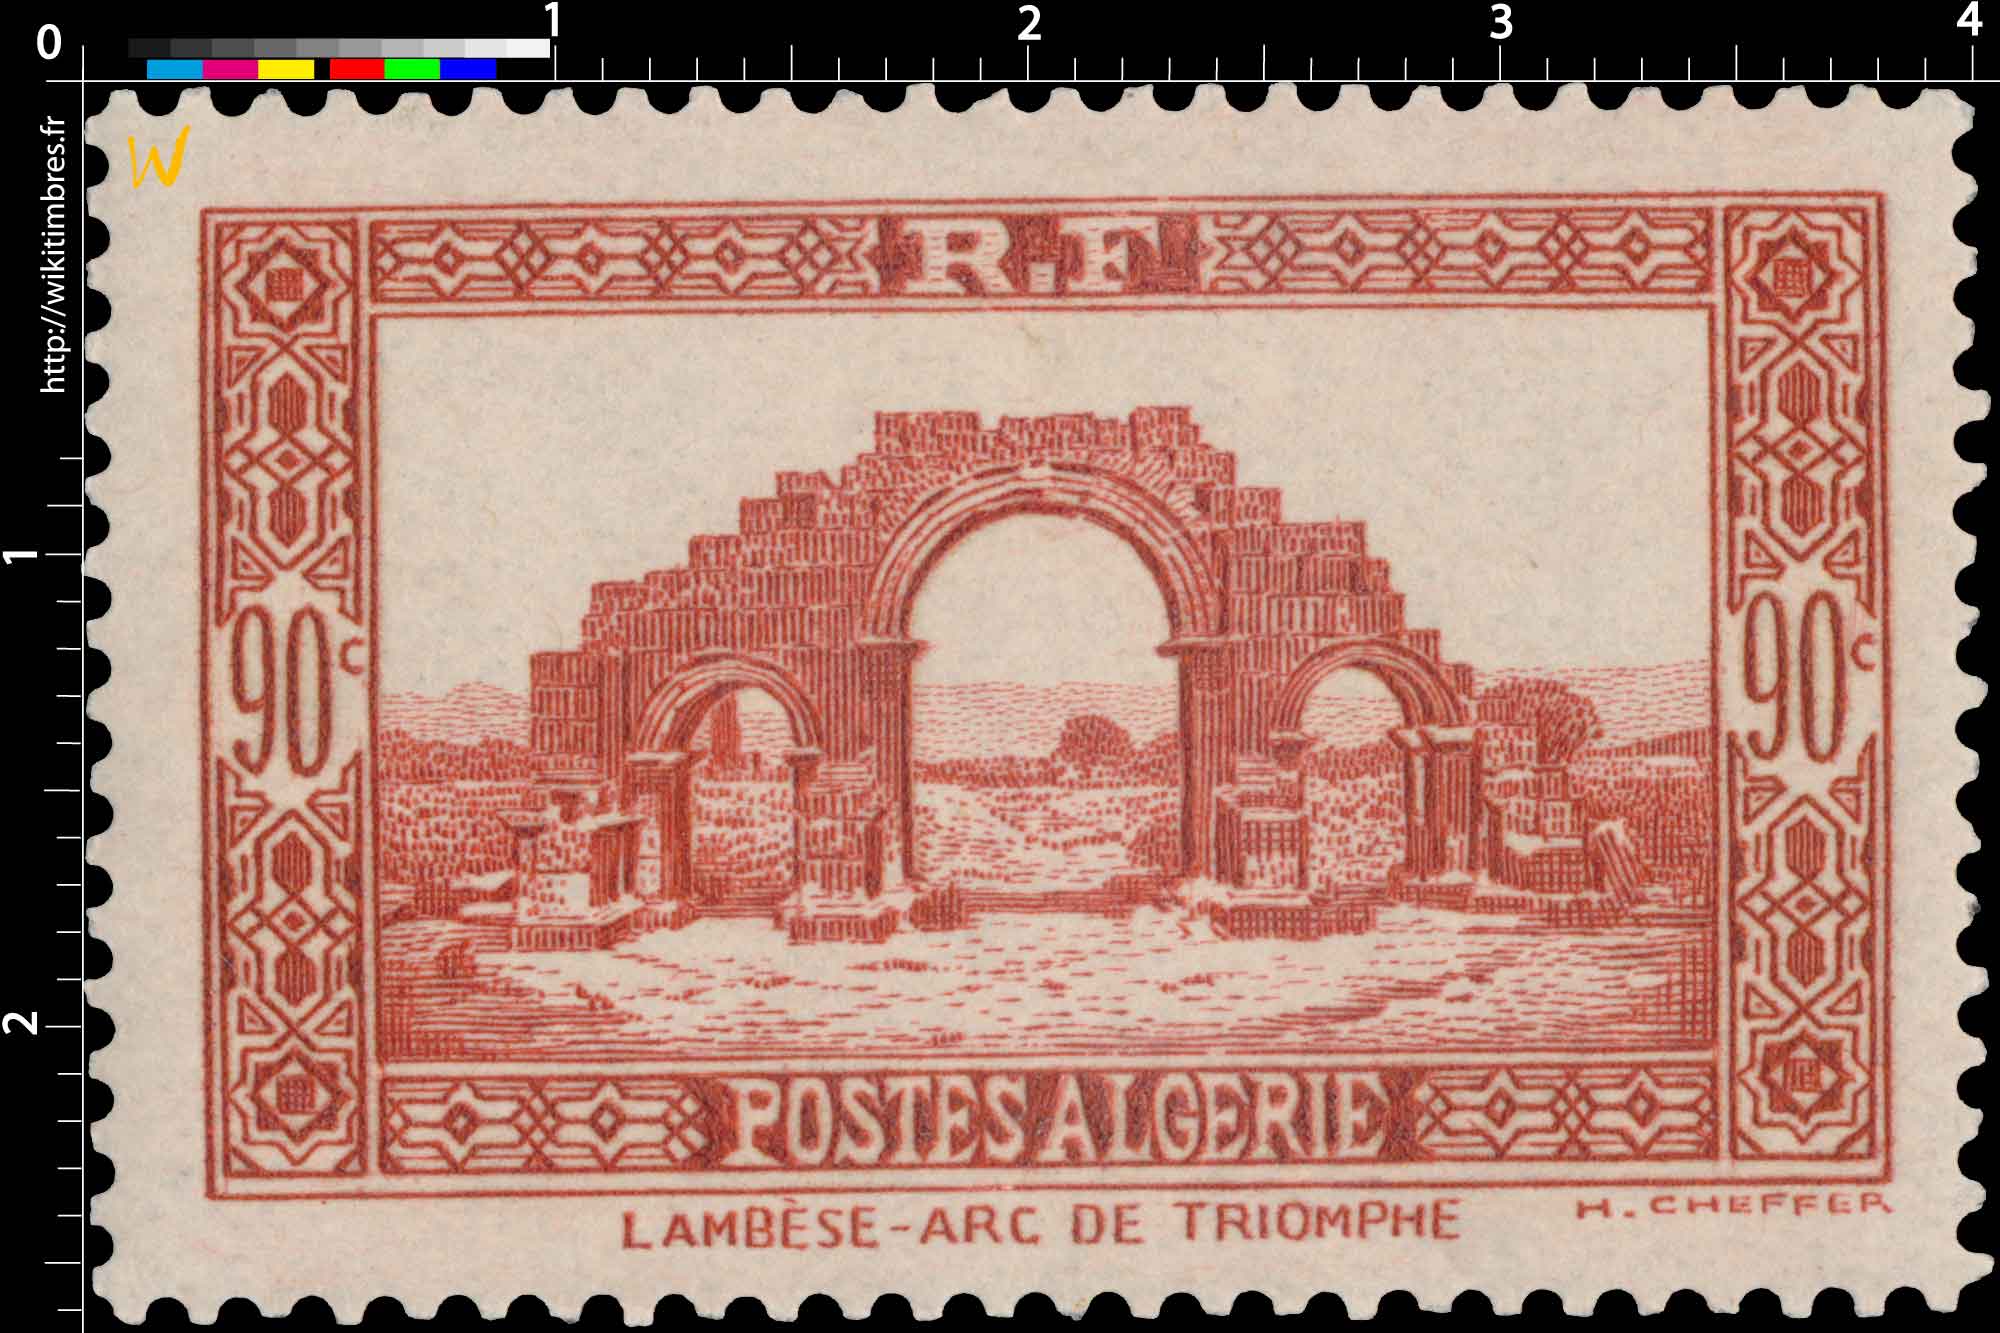 Algérie - Arc de triomphe - Lambèse